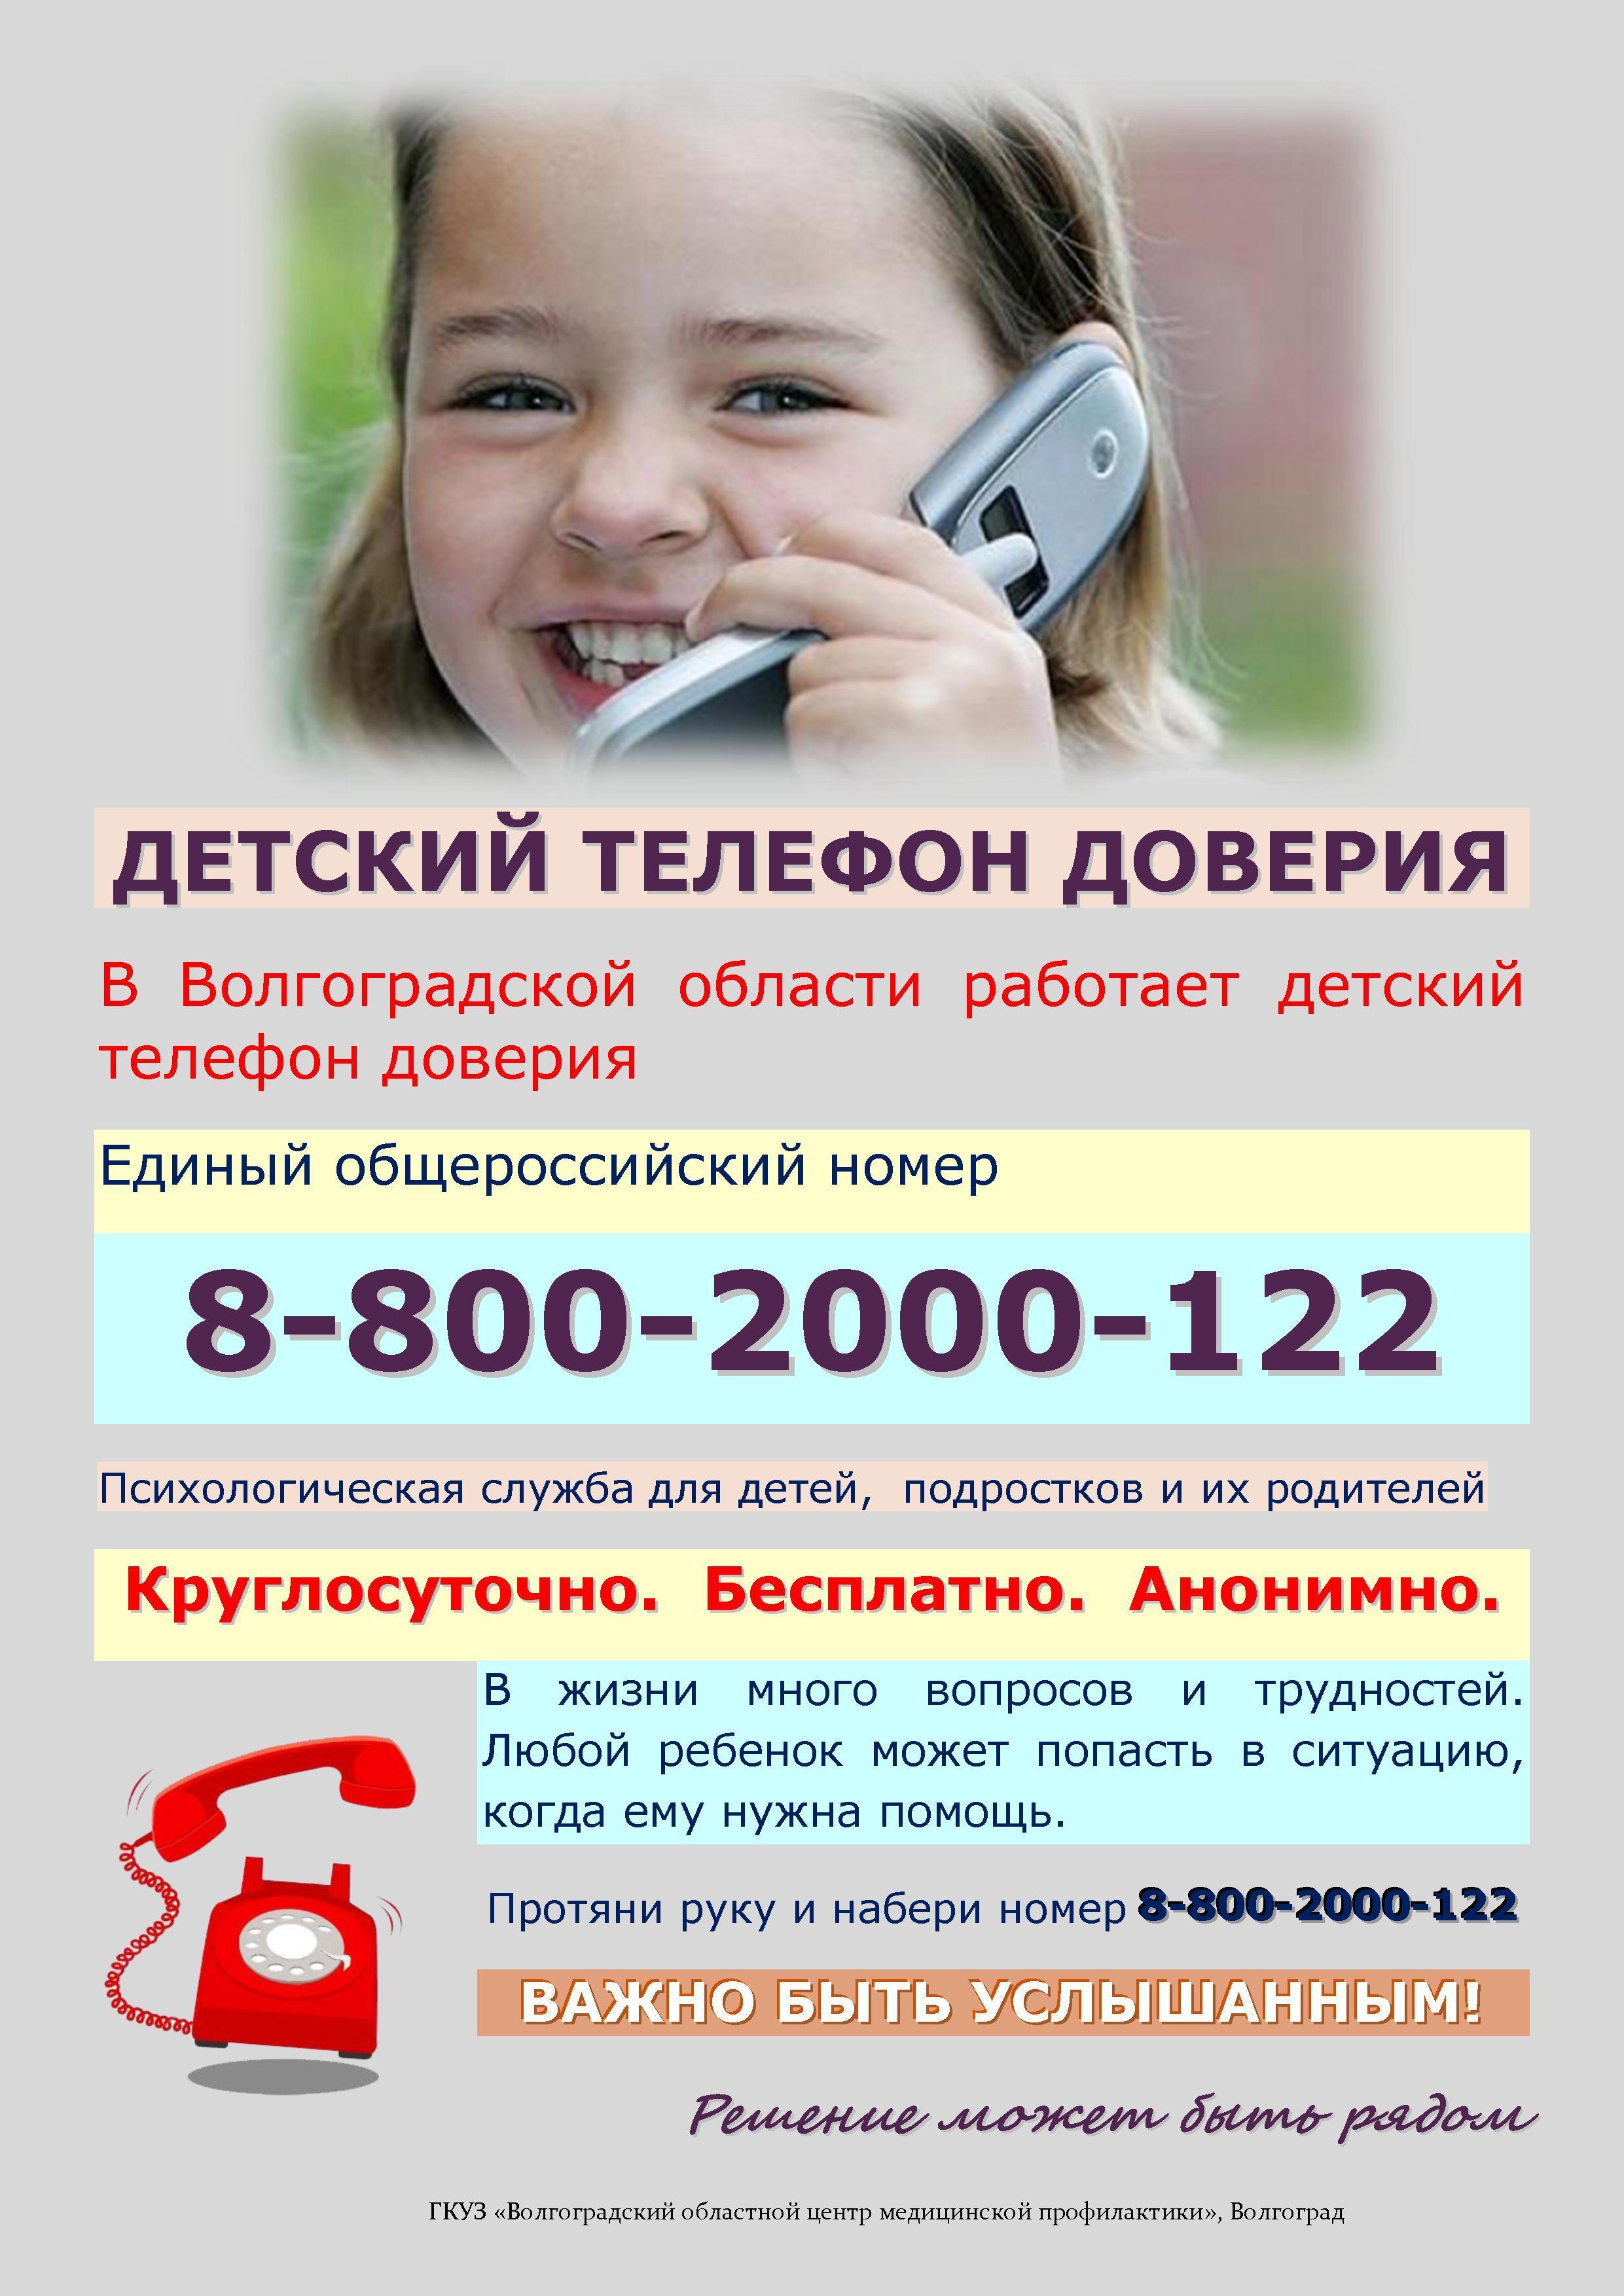 Телефон доверия павлова. Телефон доверия. Детский телефон доверия. Телефон доверия для детей подростков и их родителей. Номер телефона доверия для детей.